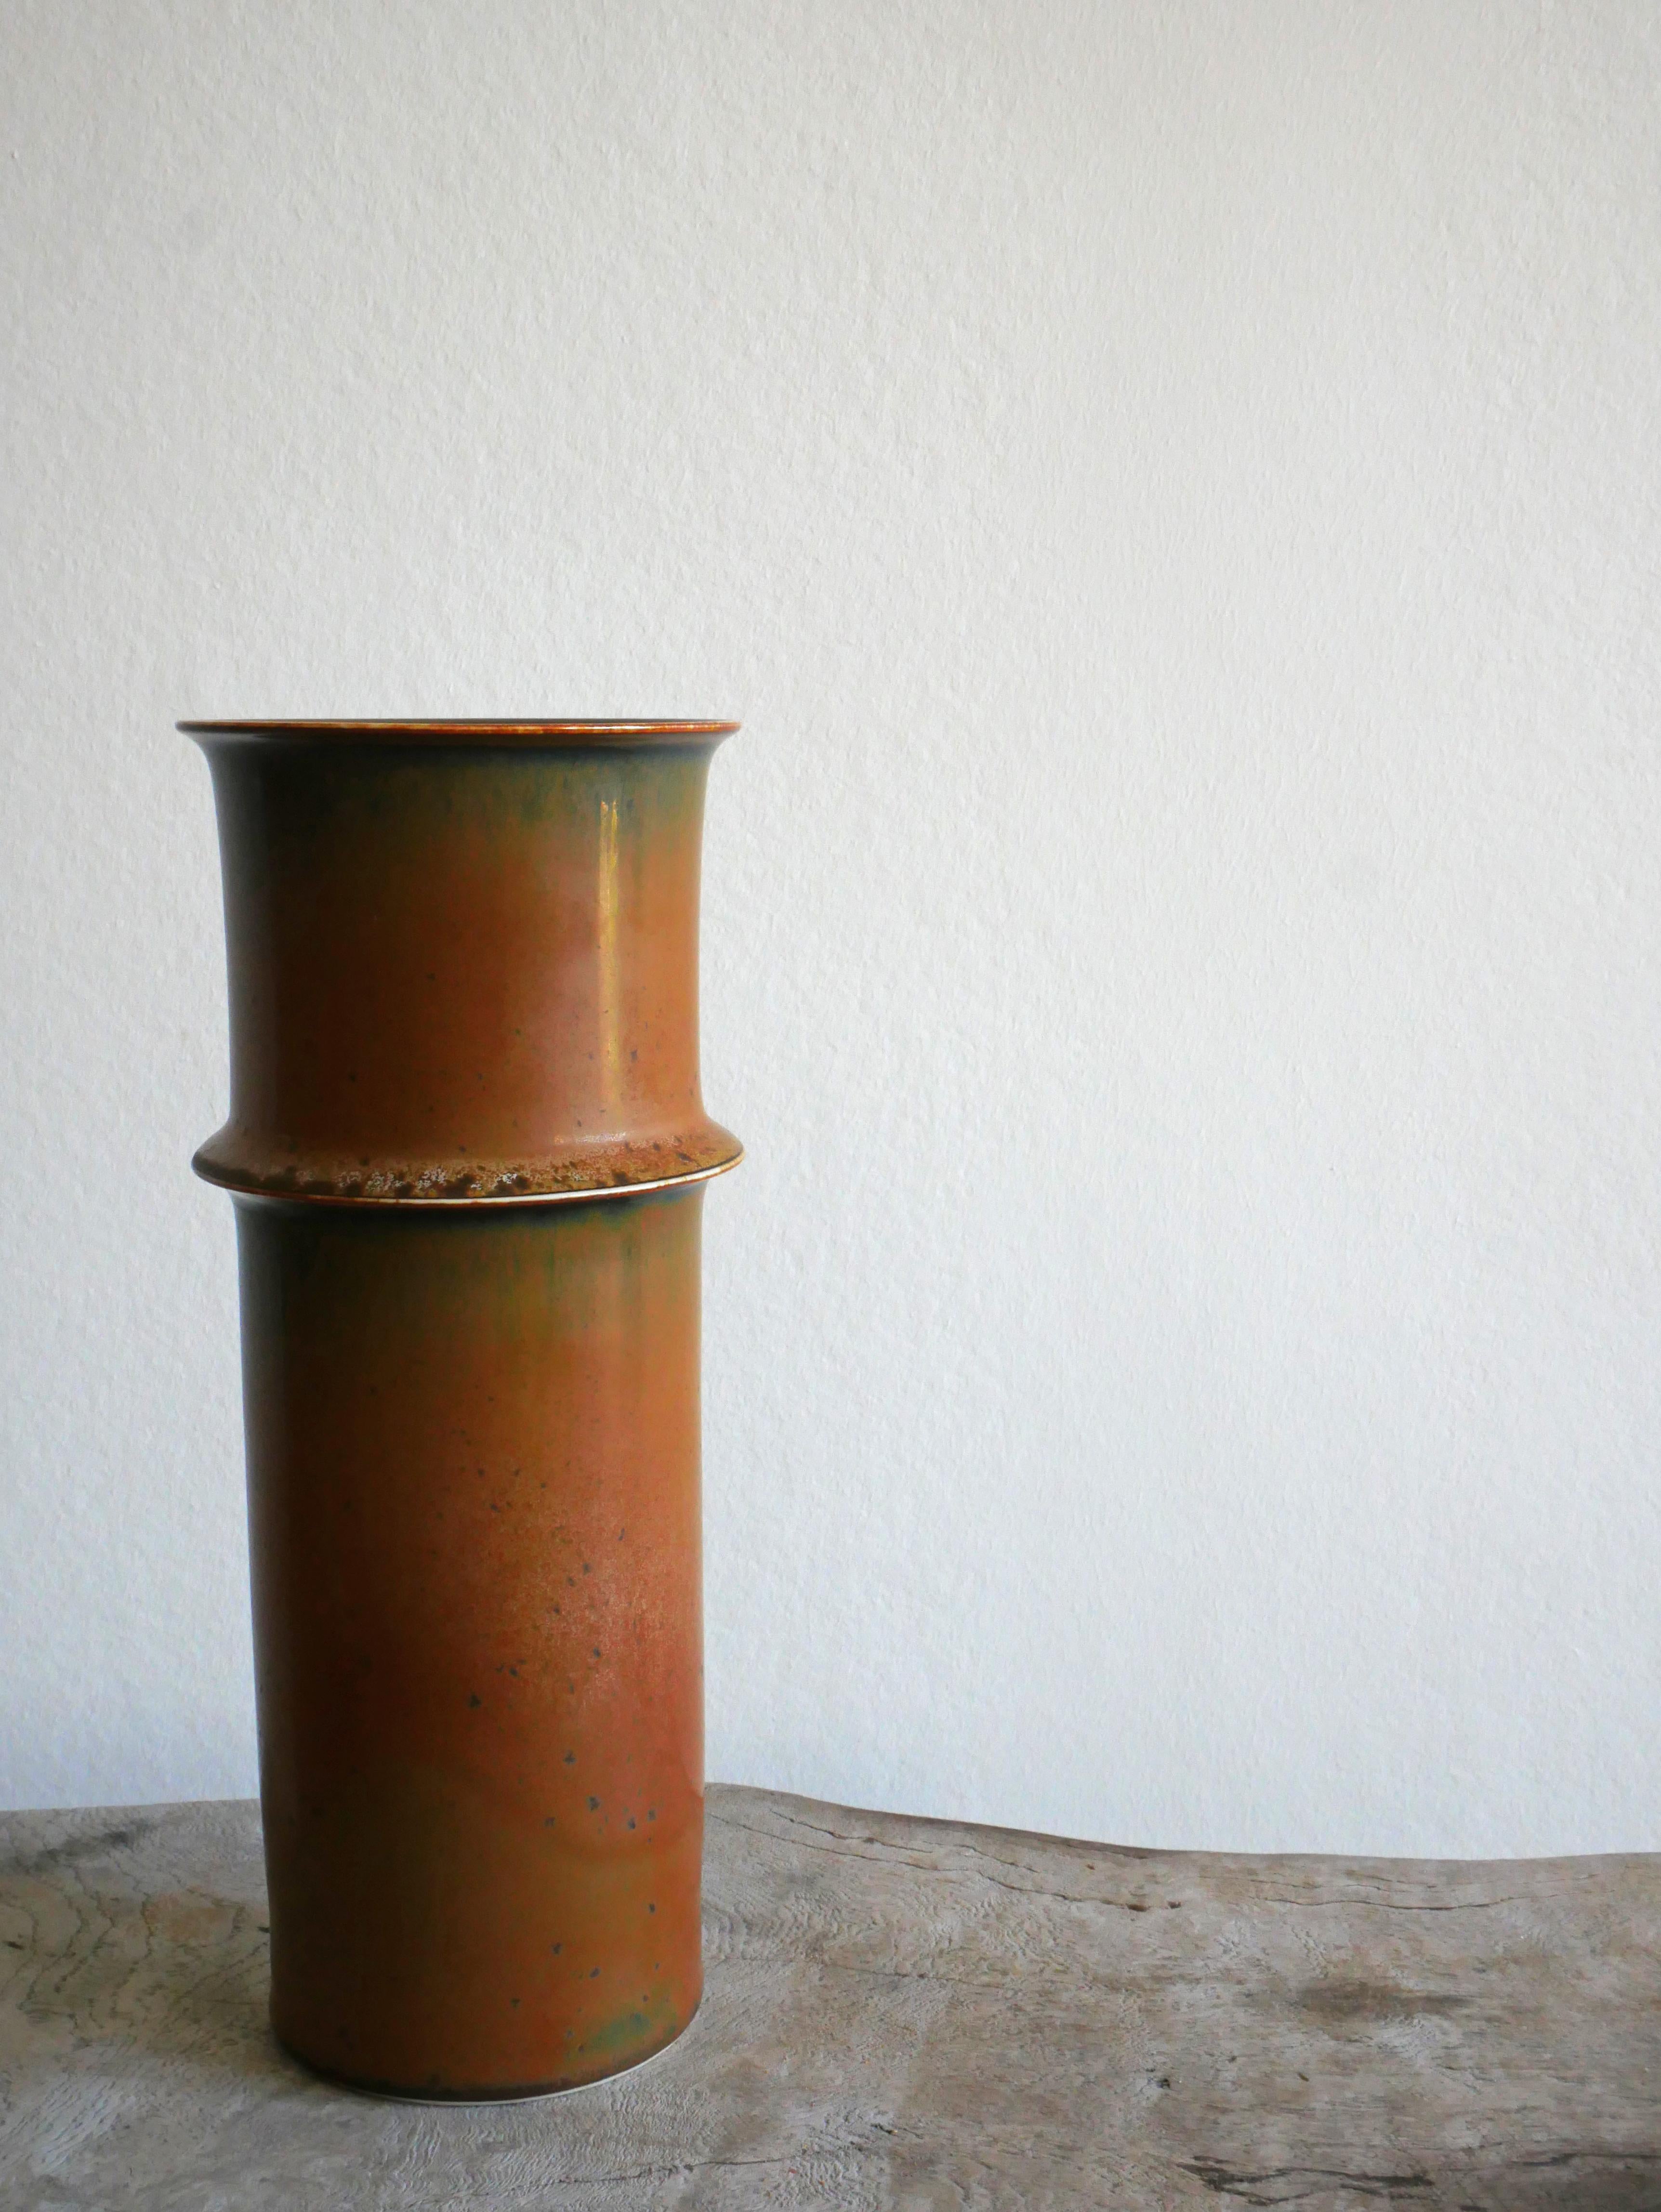 Magnifique vase en émail multicolore brun/vert/bleu.
 
Conçue par Stig Lindberg à Gustavsberg, années 1950
Hauteur : 22 cm
Diamètre : 9 cm

En très bon état.